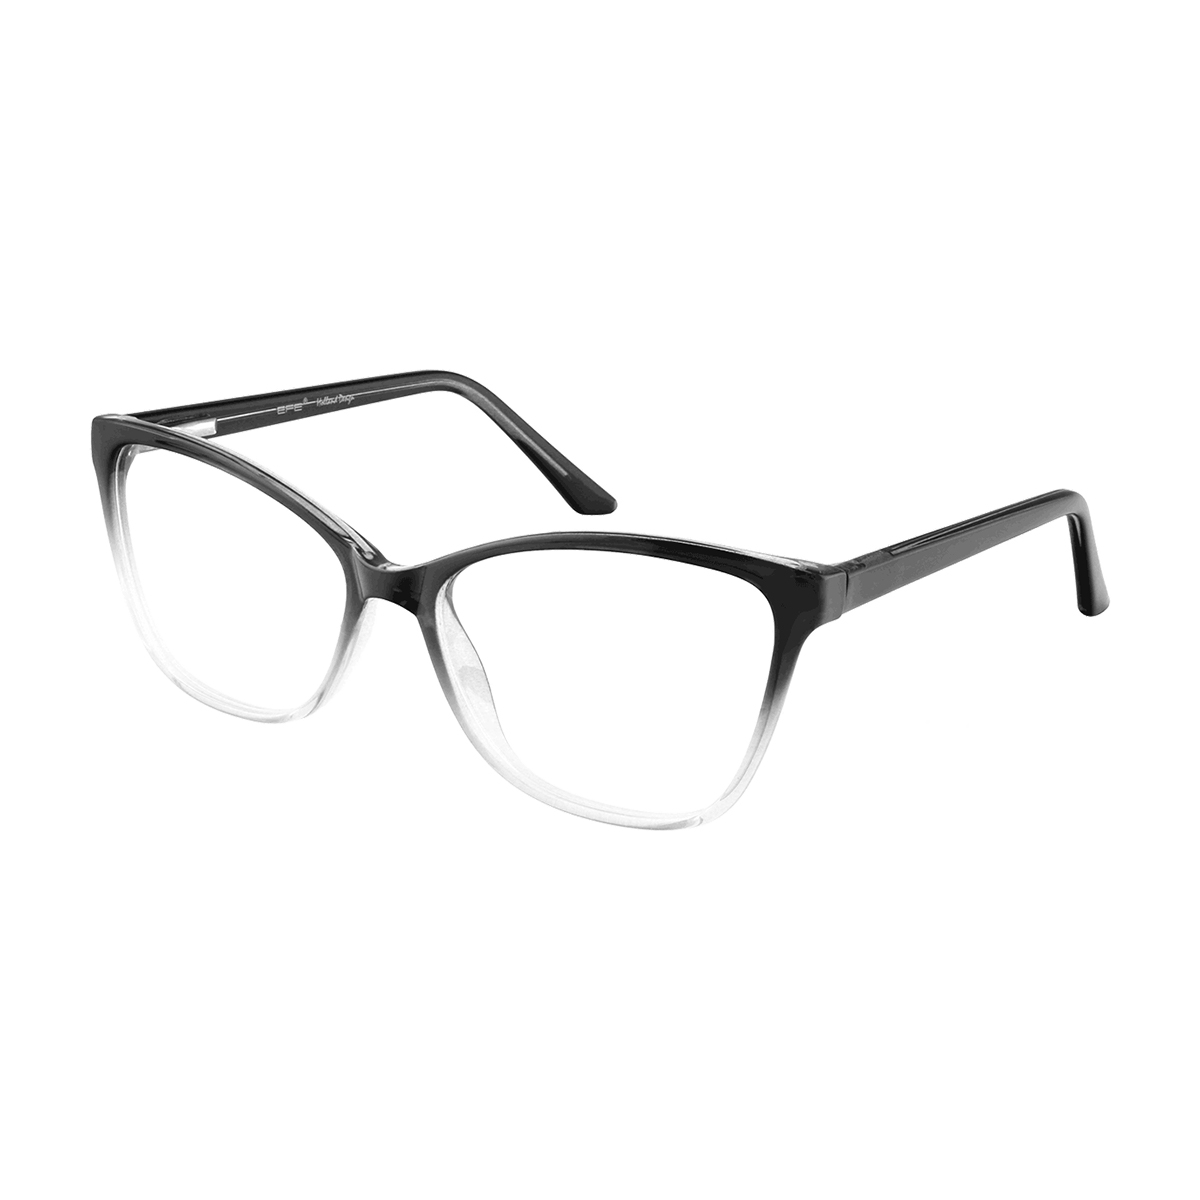 Asies - Cat-eye Black Reading Glasses for Women